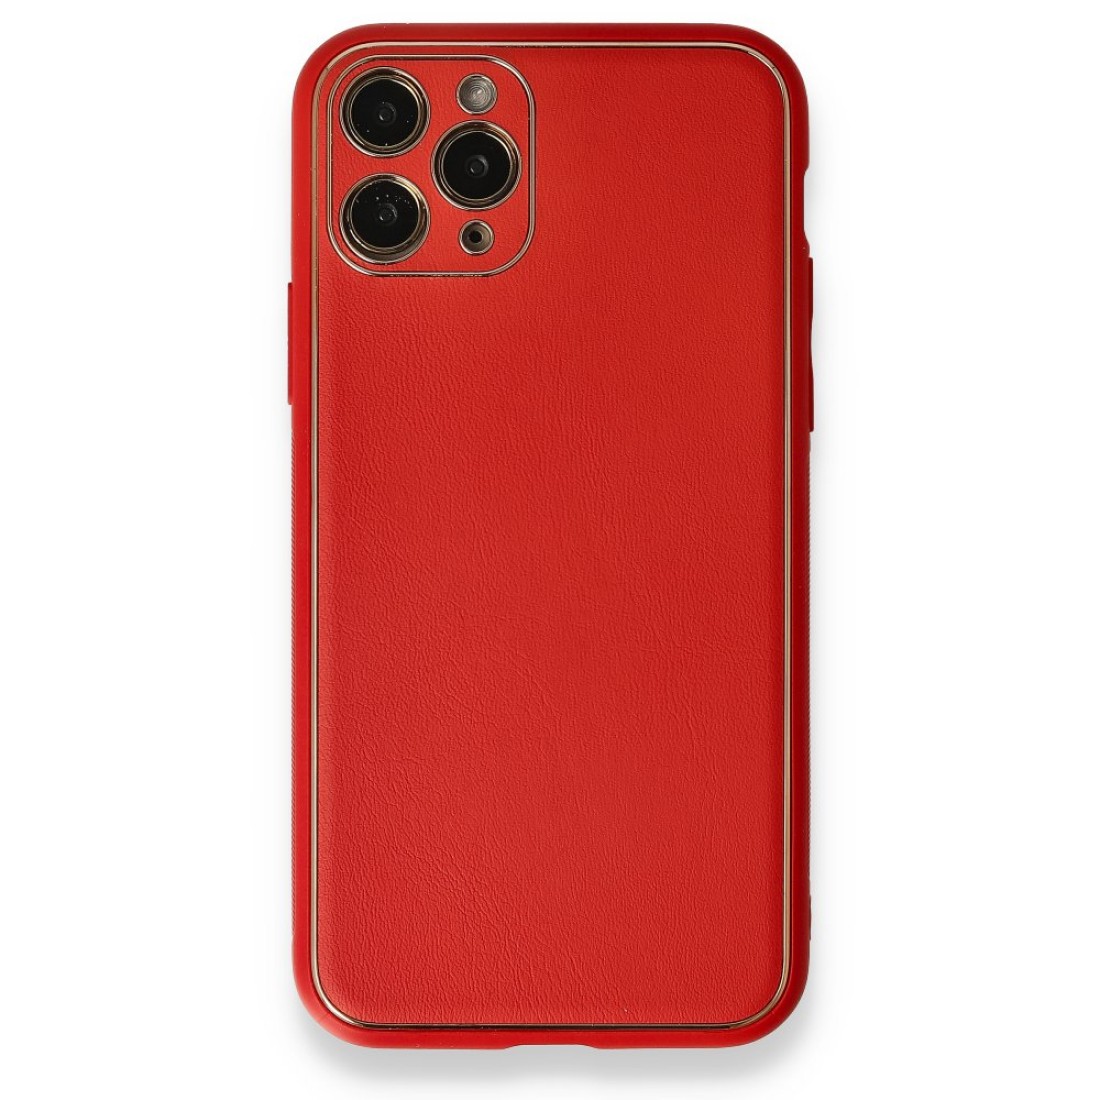 Apple iPhone 11 Pro Kılıf Coco Deri Silikon Kapak - Kırmızı